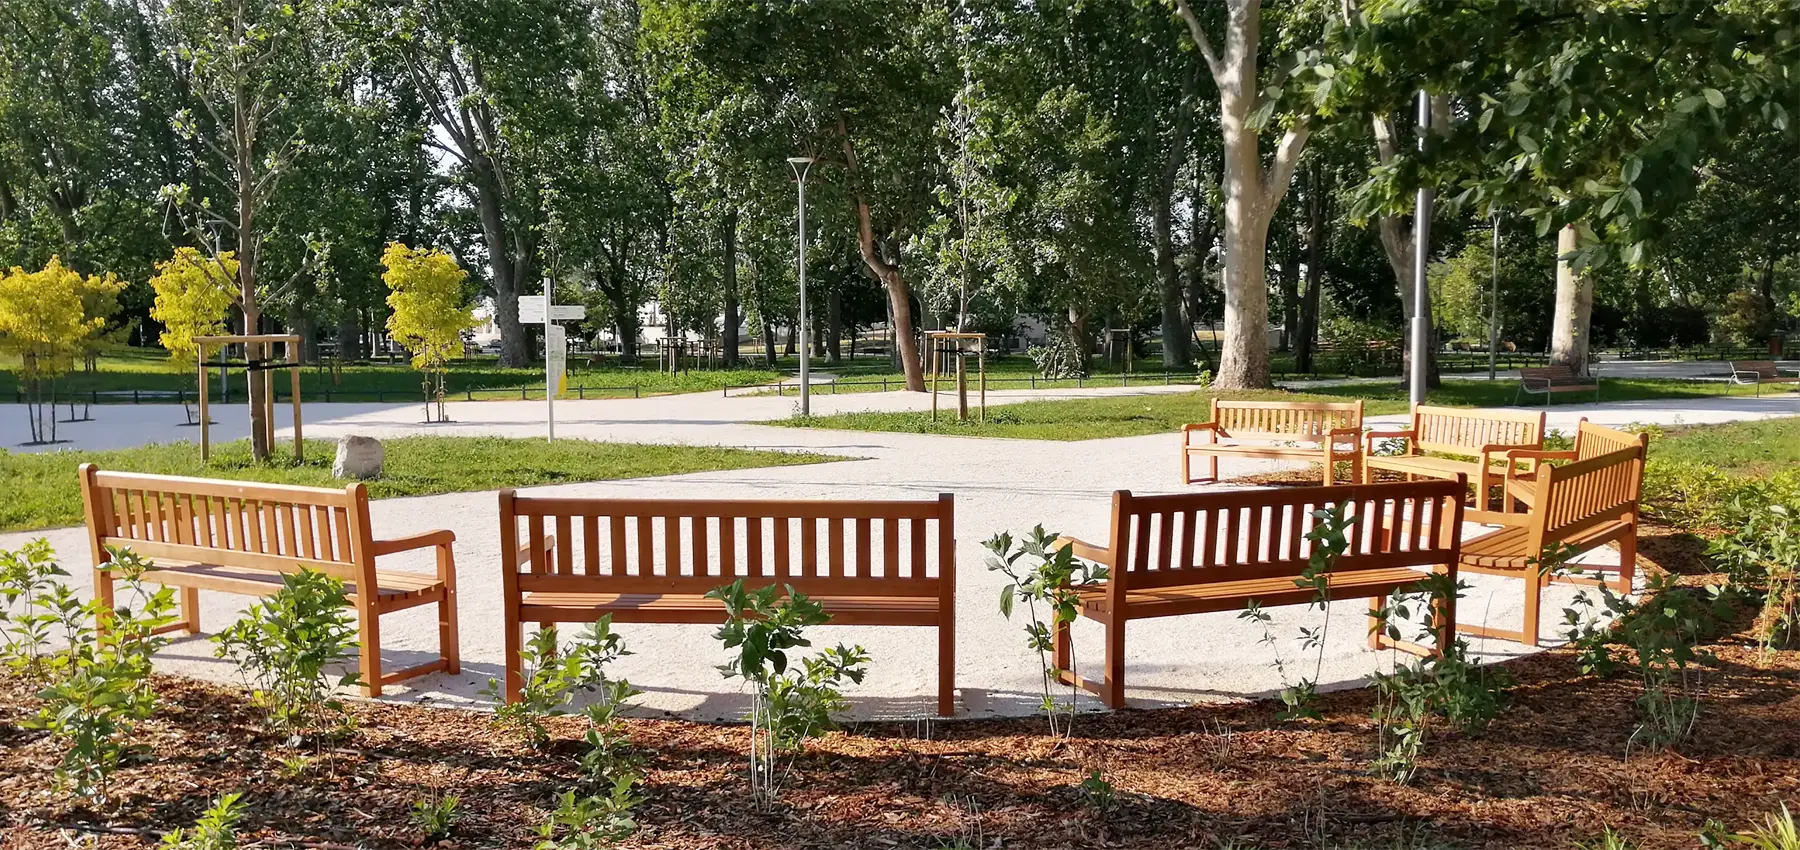 Banco Madera Alpino Mobiliario urbano para sentarse parques y jardines